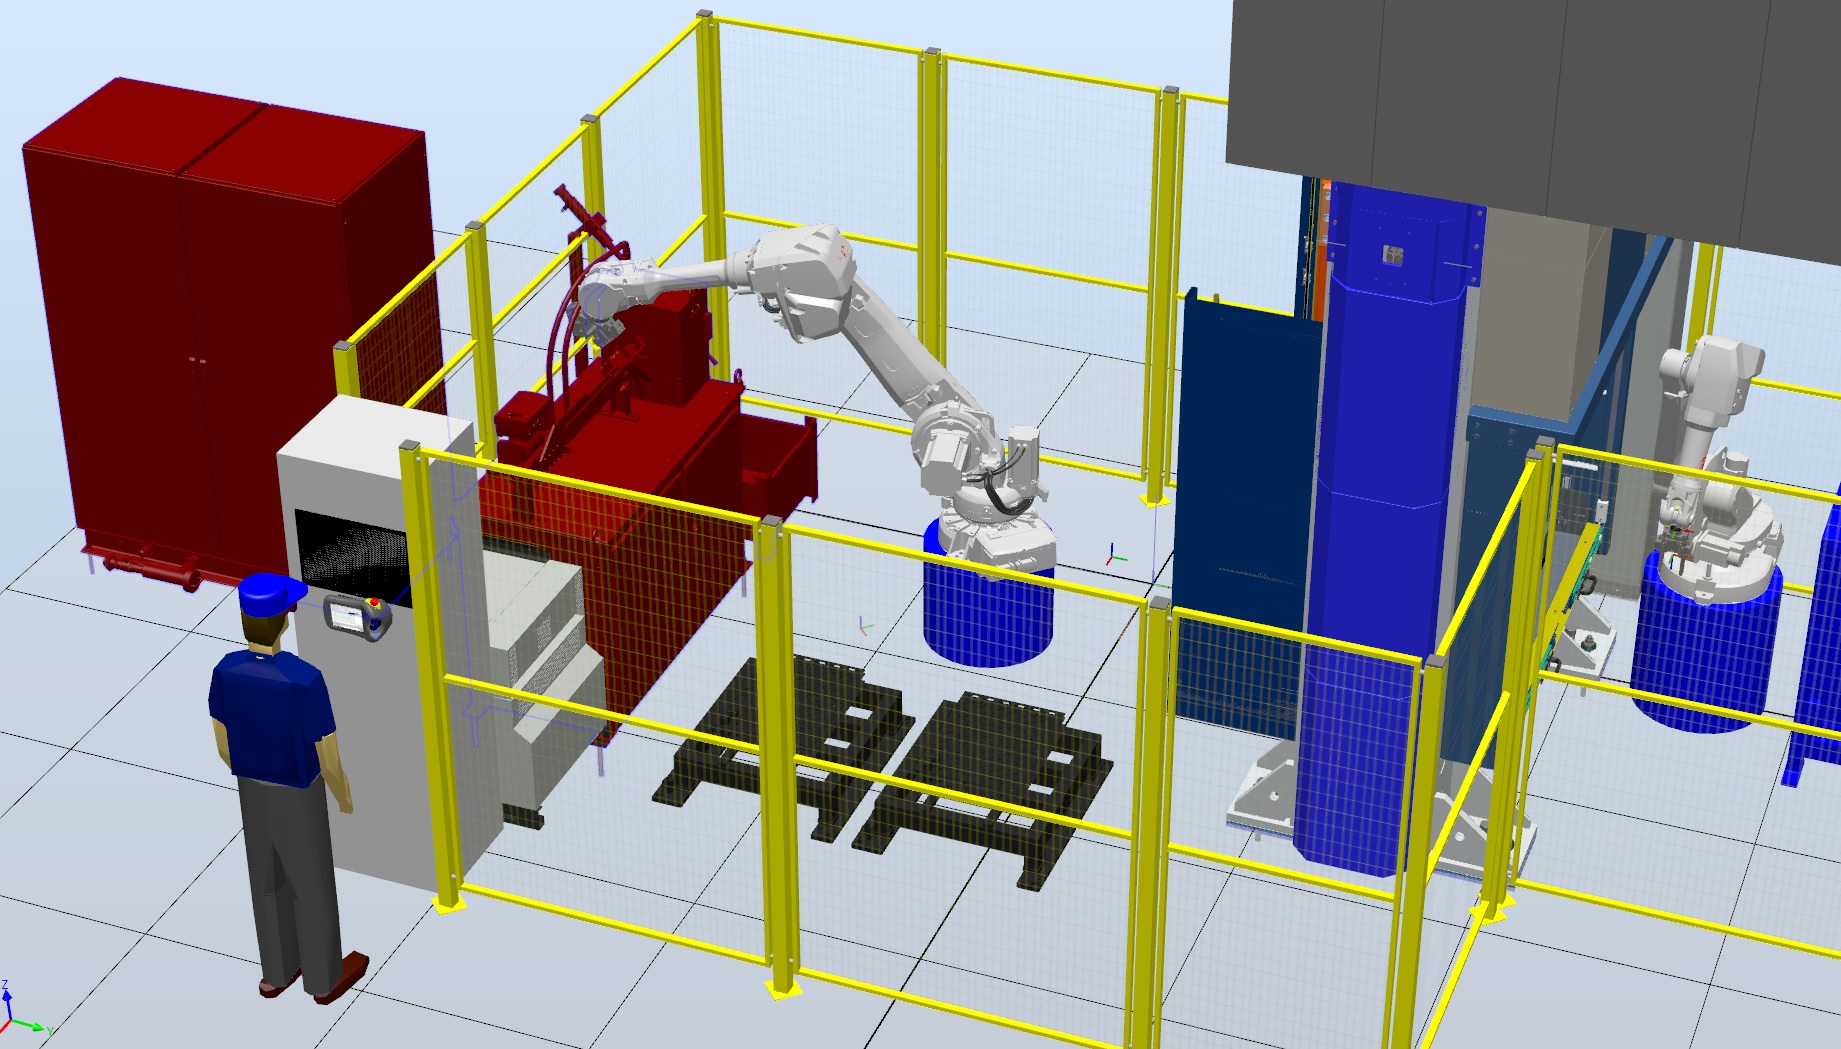 Realizové robotizované pracoviště s roboty ABB pro kování a kalení dílců